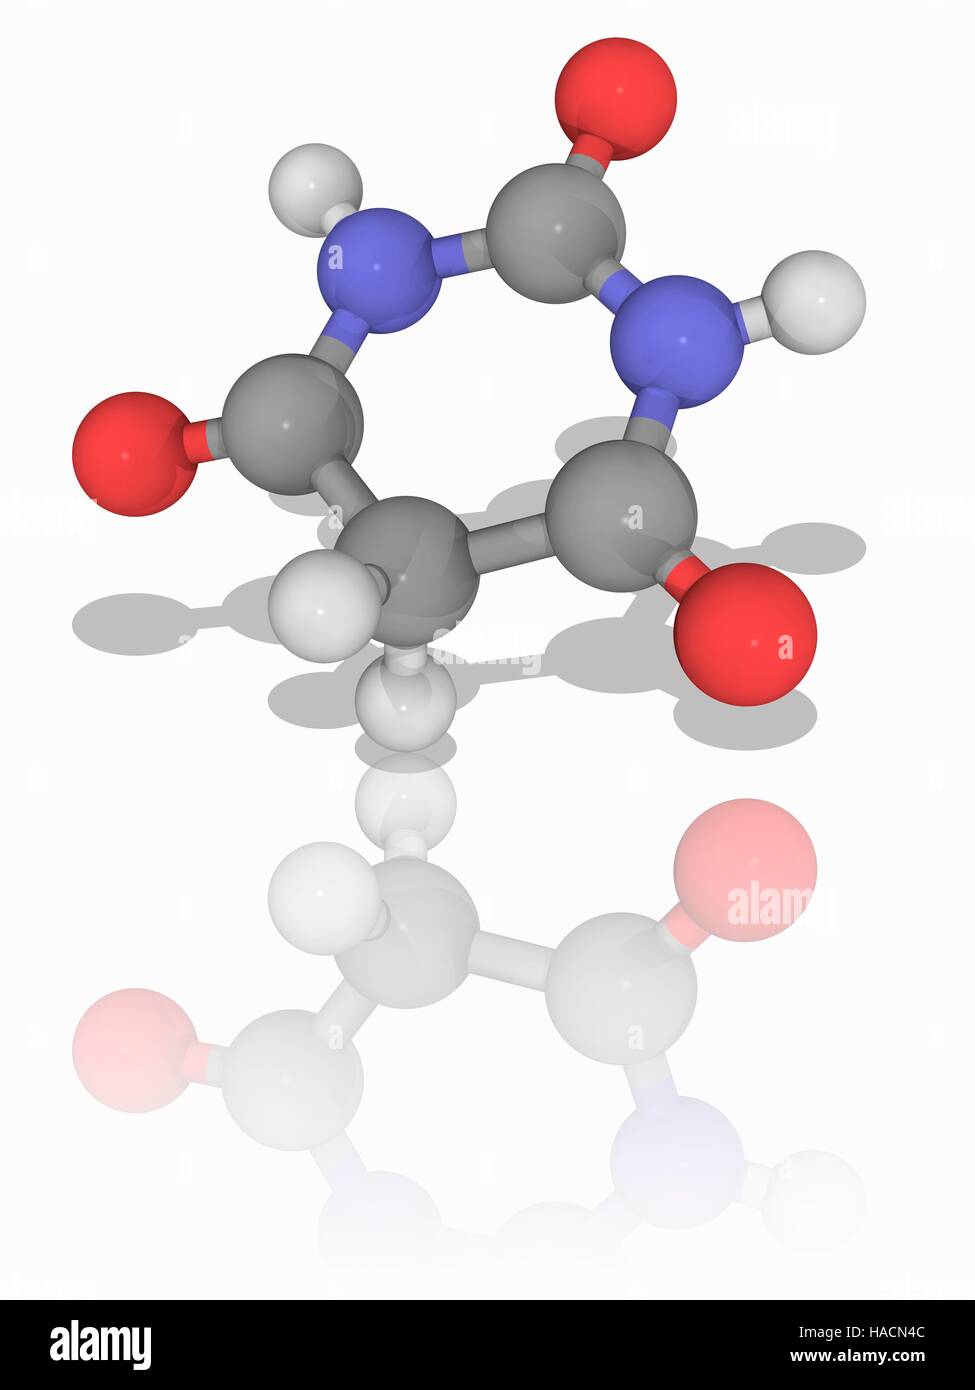 Acido barbiturico. Il modello molecolare del composto chimico acido barbiturico (C4.H4.N2.O3), noto anche come malonylurea o 6-hydroxyuracil. Questo prodotto chimico non è farmacologicamente attivo, ma è utilizzato in reazioni per la produzione di farmaci di barbiturato. Gli atomi sono rappresentati da sfere e sono codificati a colori: carbonio (grigio), Idrogeno (bianco), Azoto (blu) e ossigeno (rosso). Illustrazione. Foto Stock